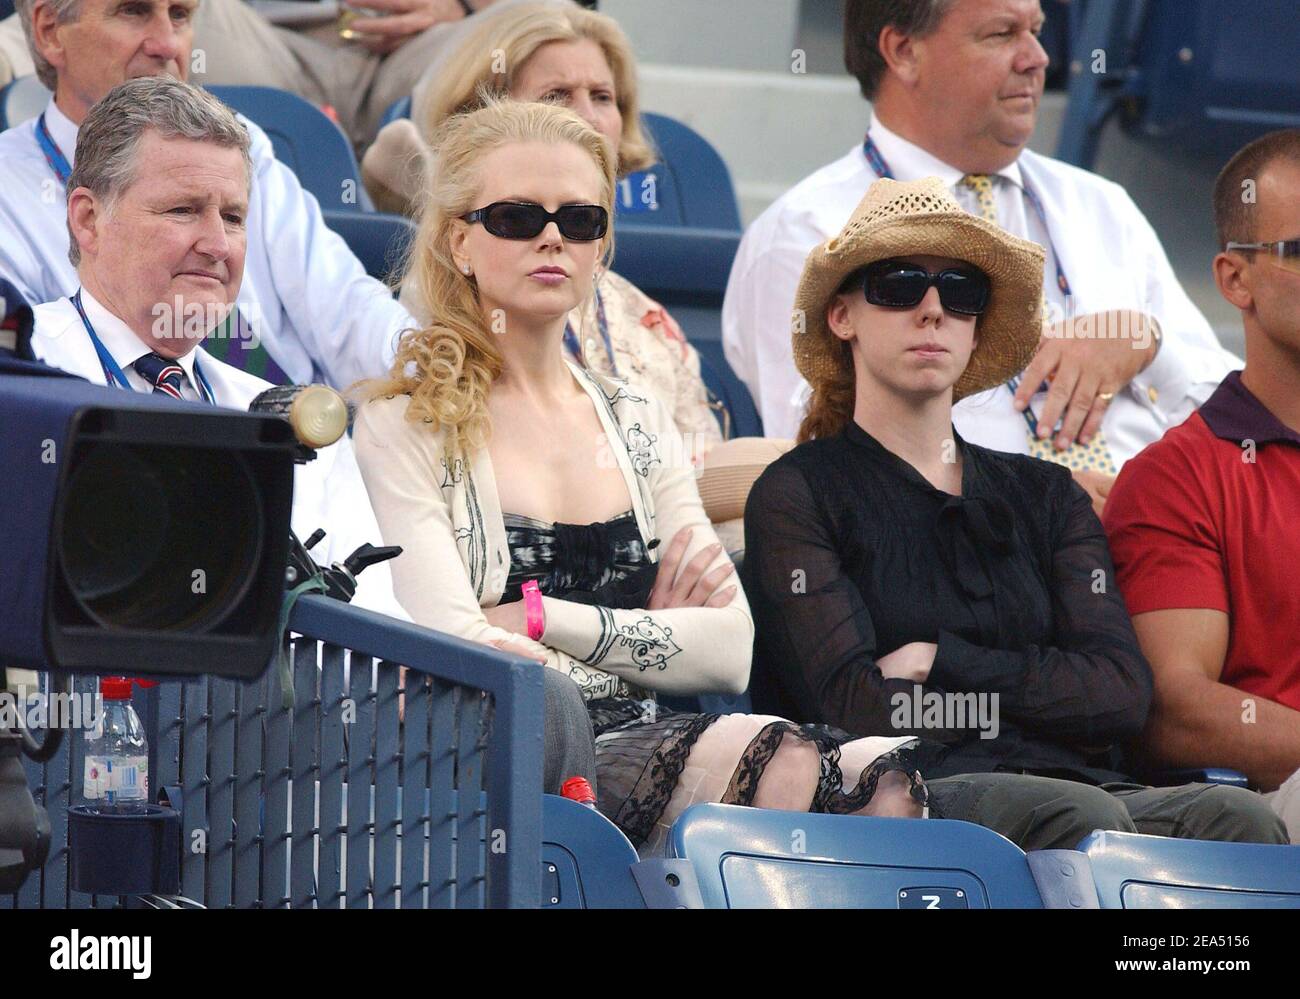 L'attrice australiana Nicole Kidman partecipa alla semifinale di Agassi al torneo di tennis US Open 2005, che si è tenuto sabato 10 settembre 2005 all'Arthur Ashe Stadium di Flushing Meadows, New York. Foto di Nicolas Khayat/ABACAPRESS.COM Foto Stock